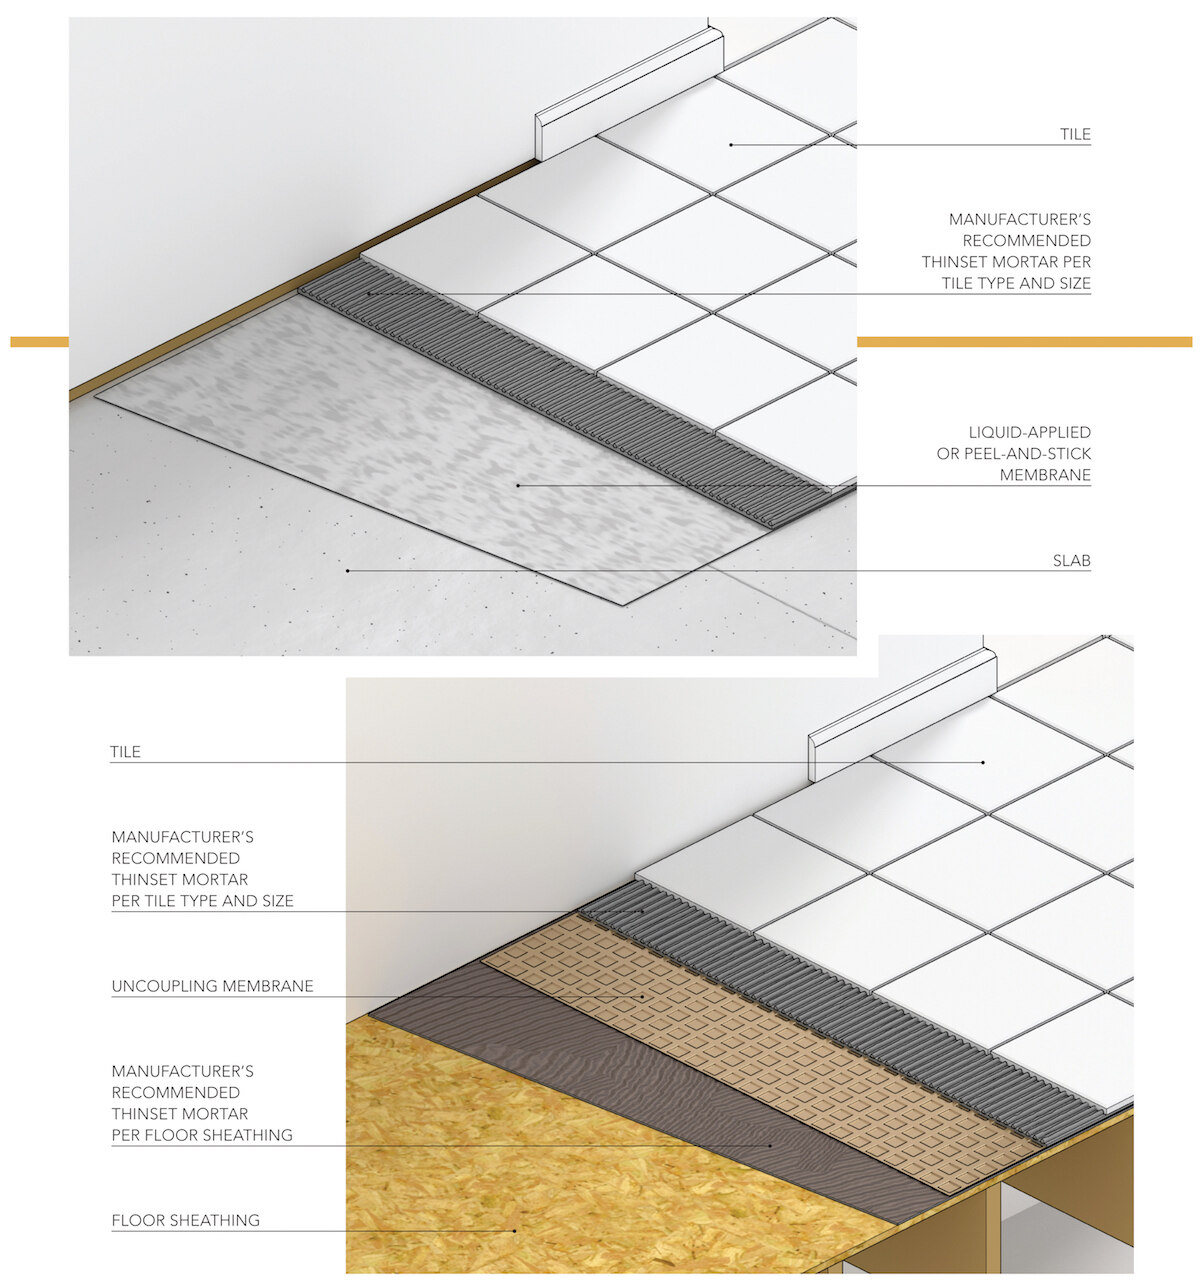 How To Avoid Ed Tile Pro Builder, Floor Substrate For Tile